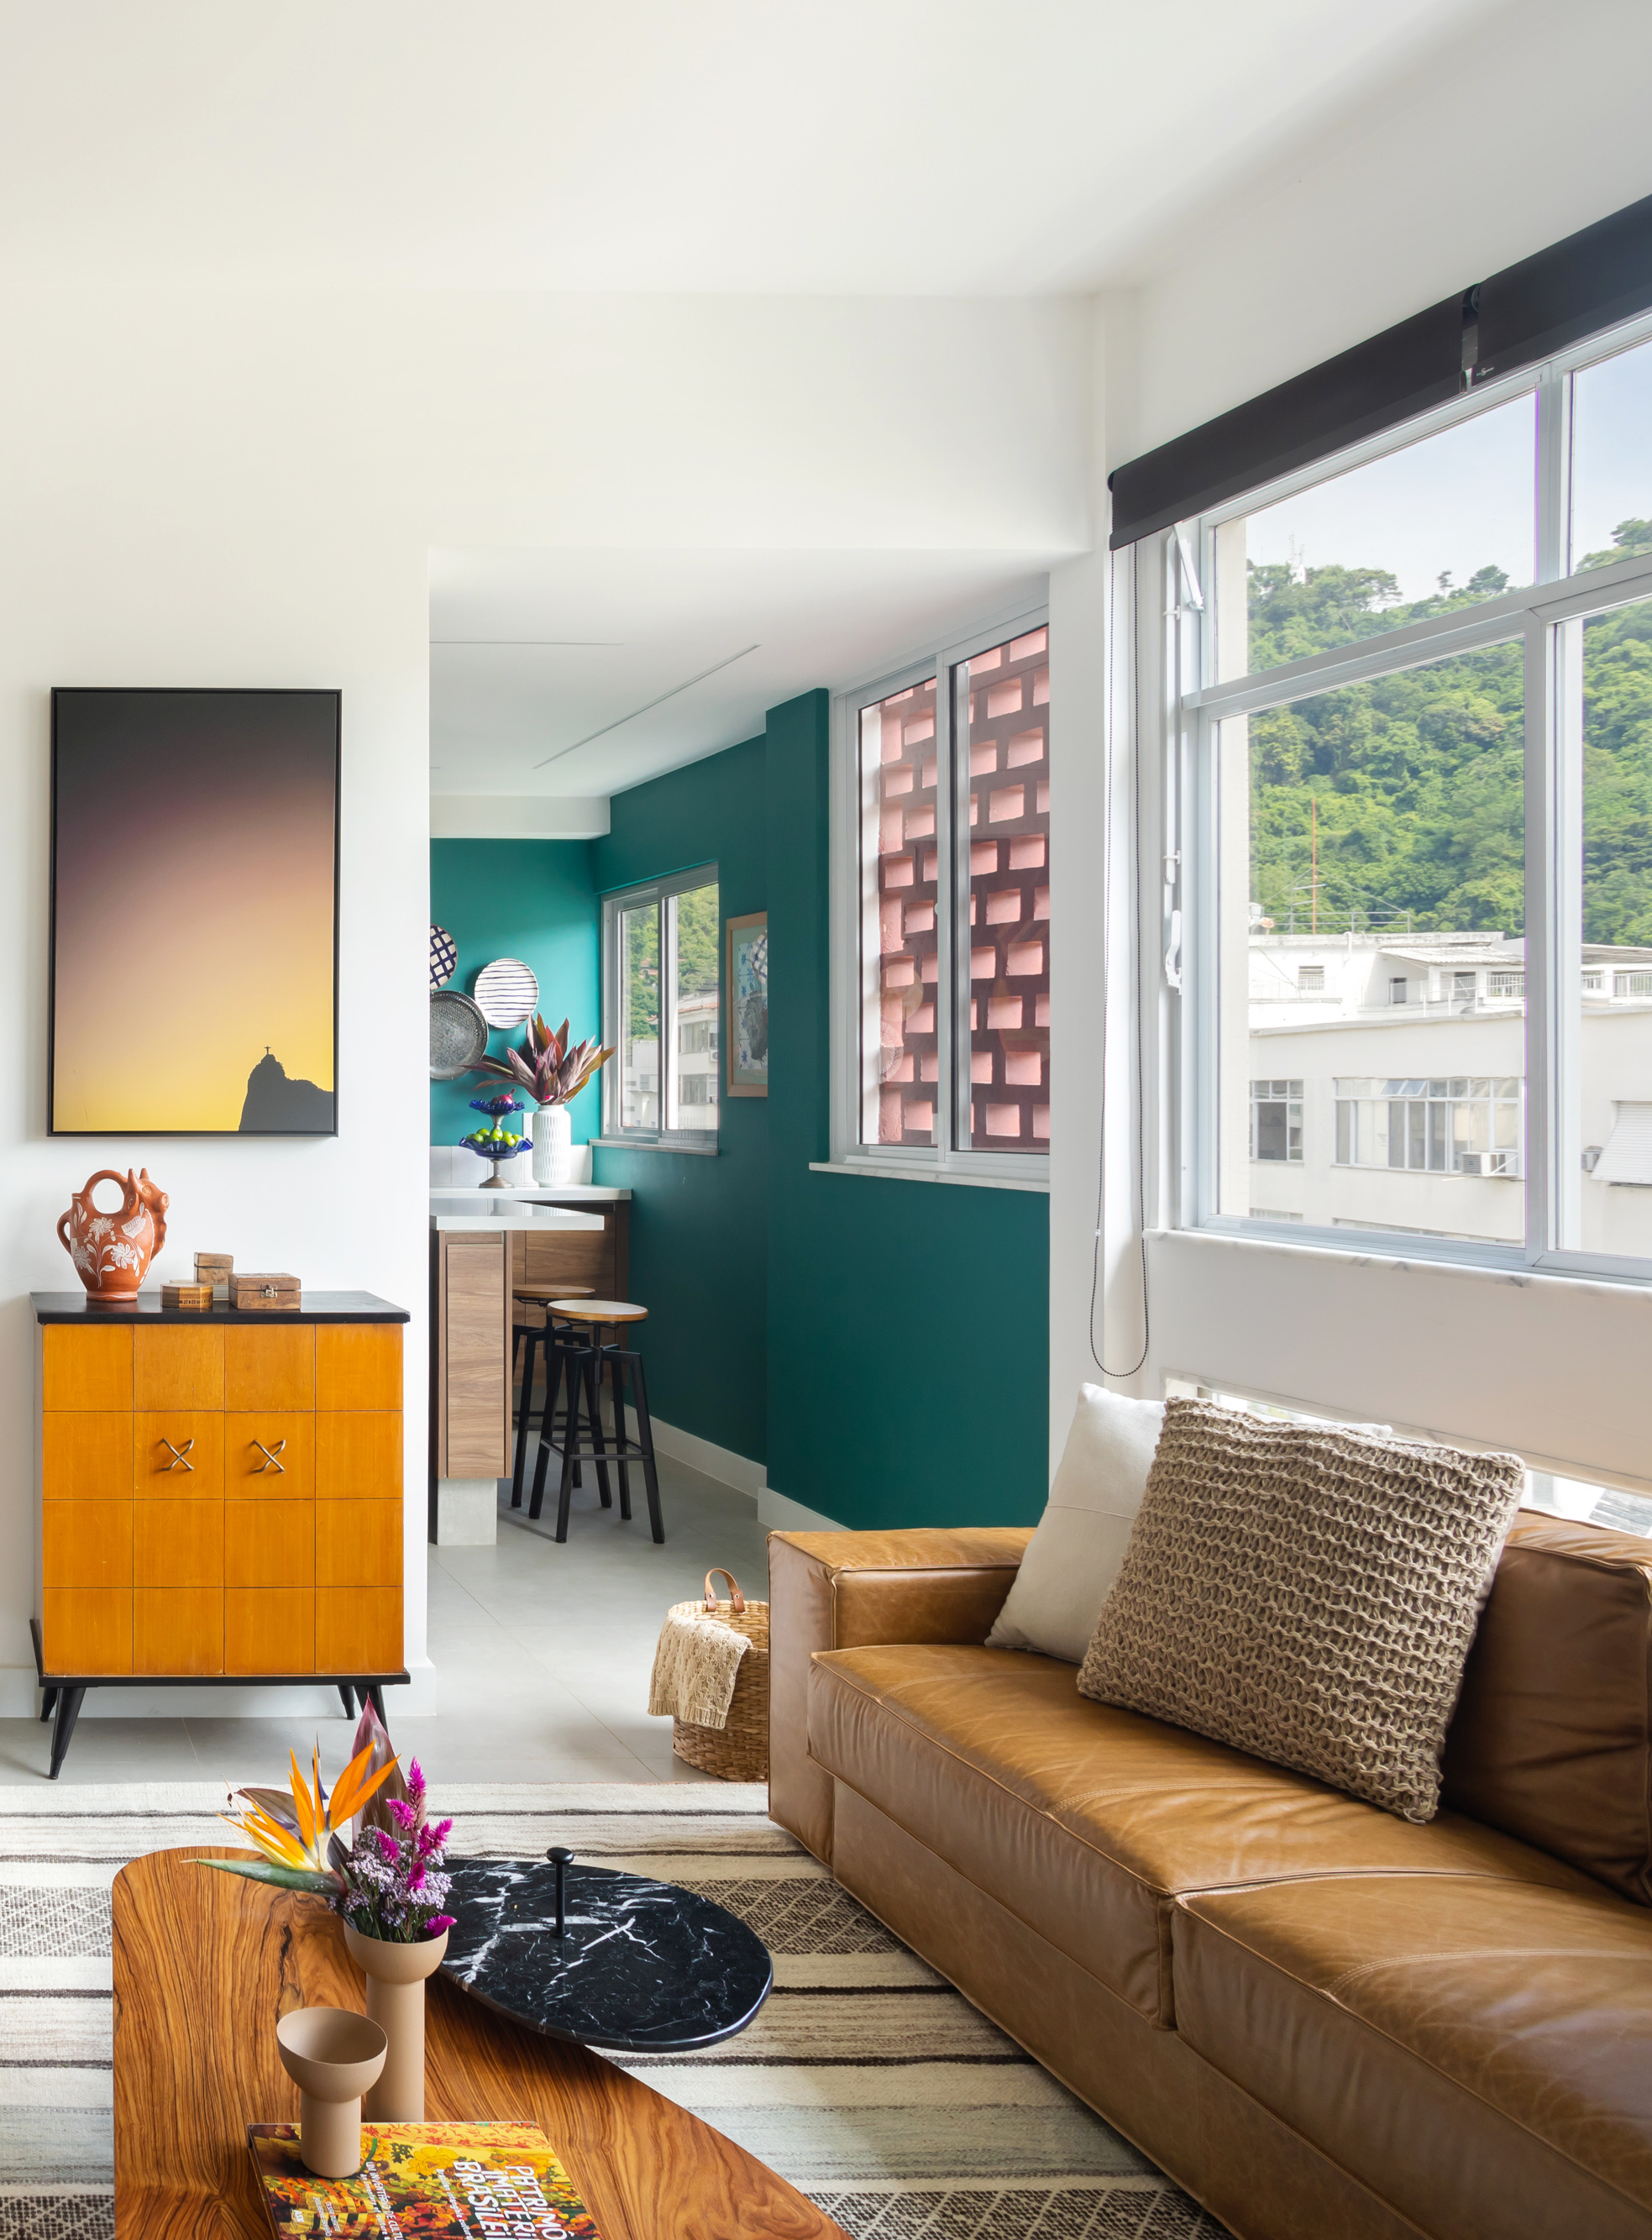 Sala de estar com sofá de couro, tapete listrado e cozinha integrada com parede verde.